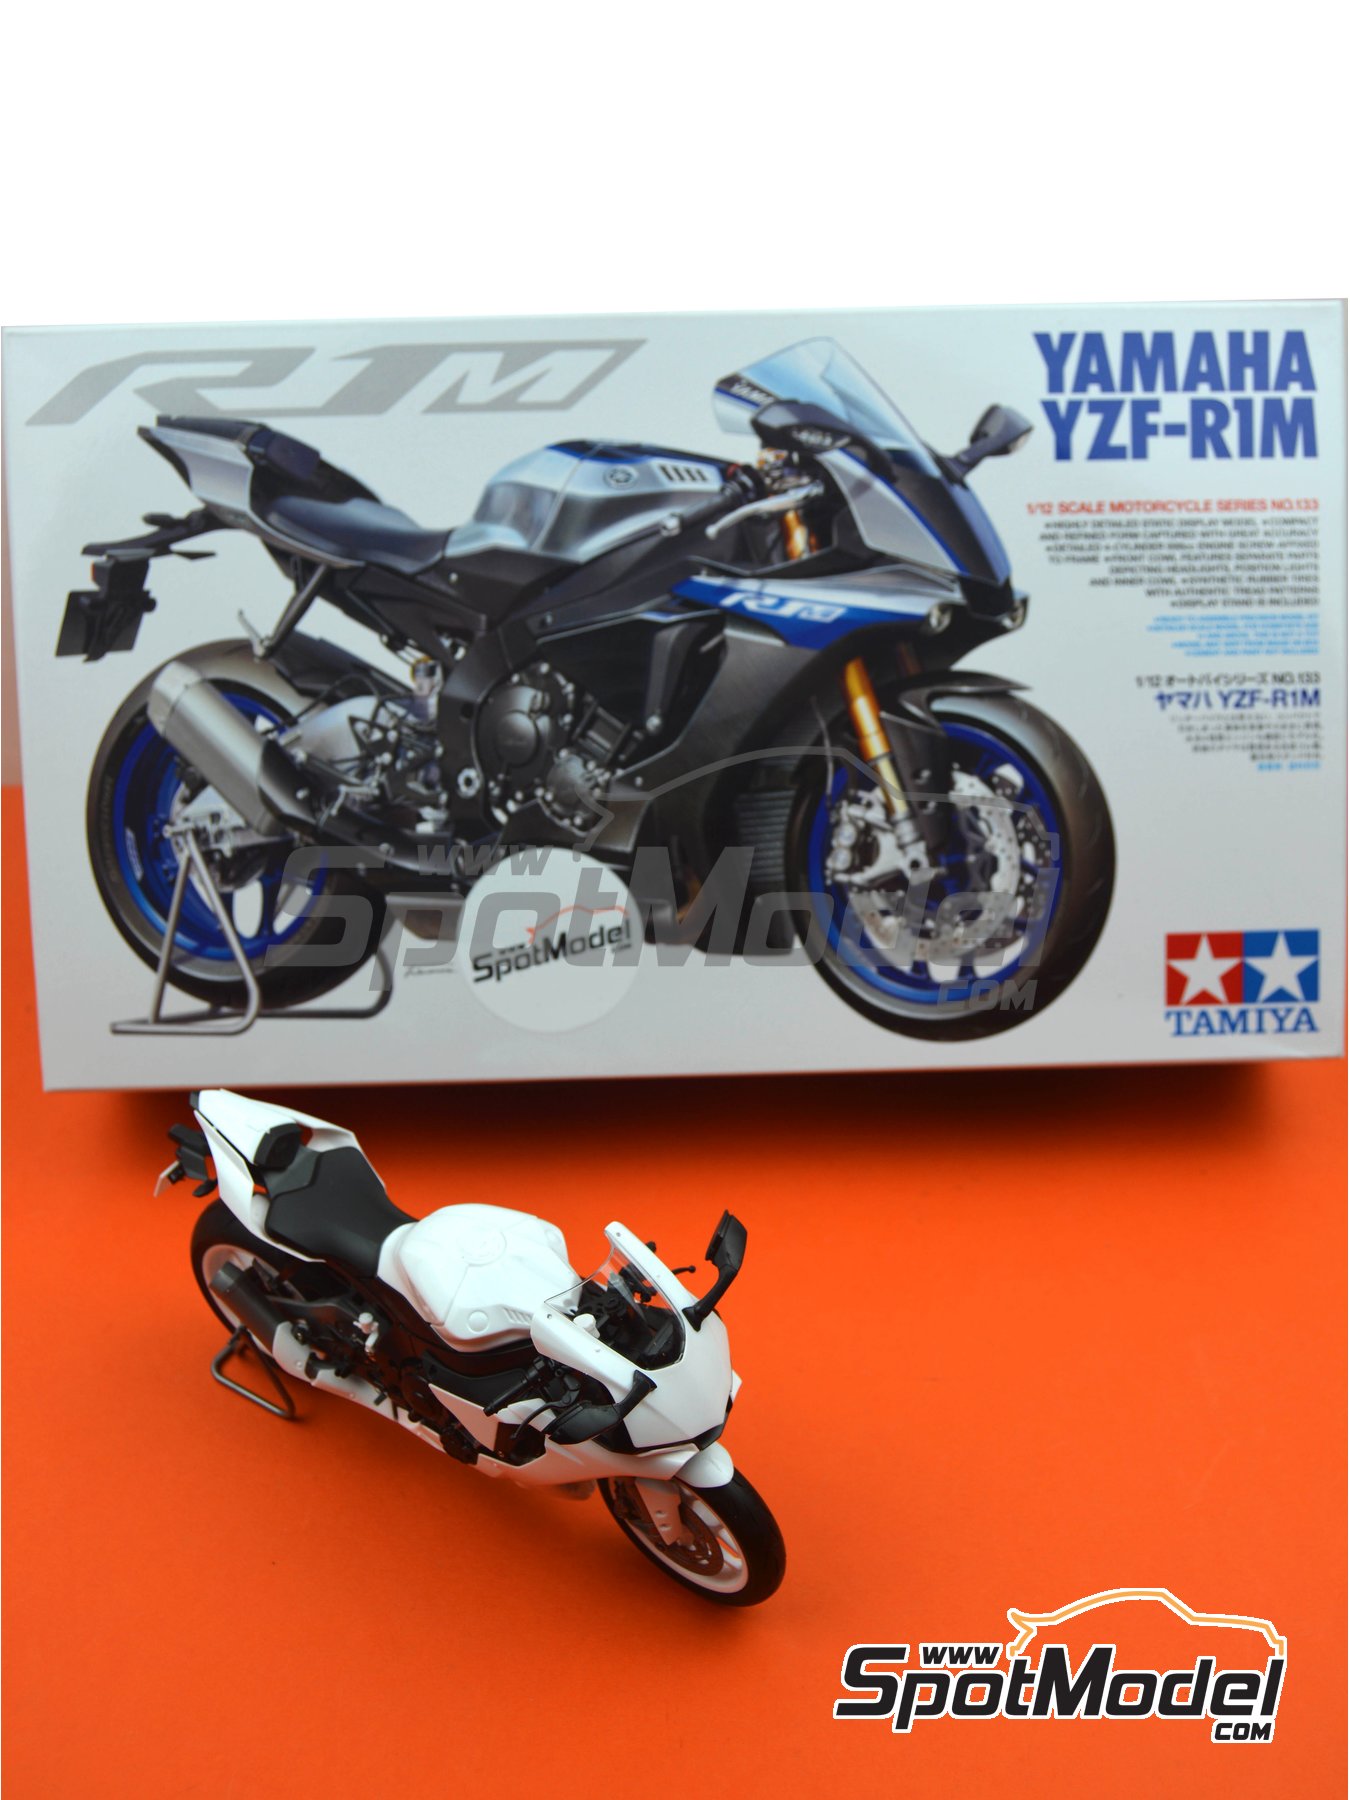 Escala 1:12, Gran Ajuste, plástico TAM14133 Tamiya Yamaha YZF-R1M 14133-Maqueta Color Plateado 